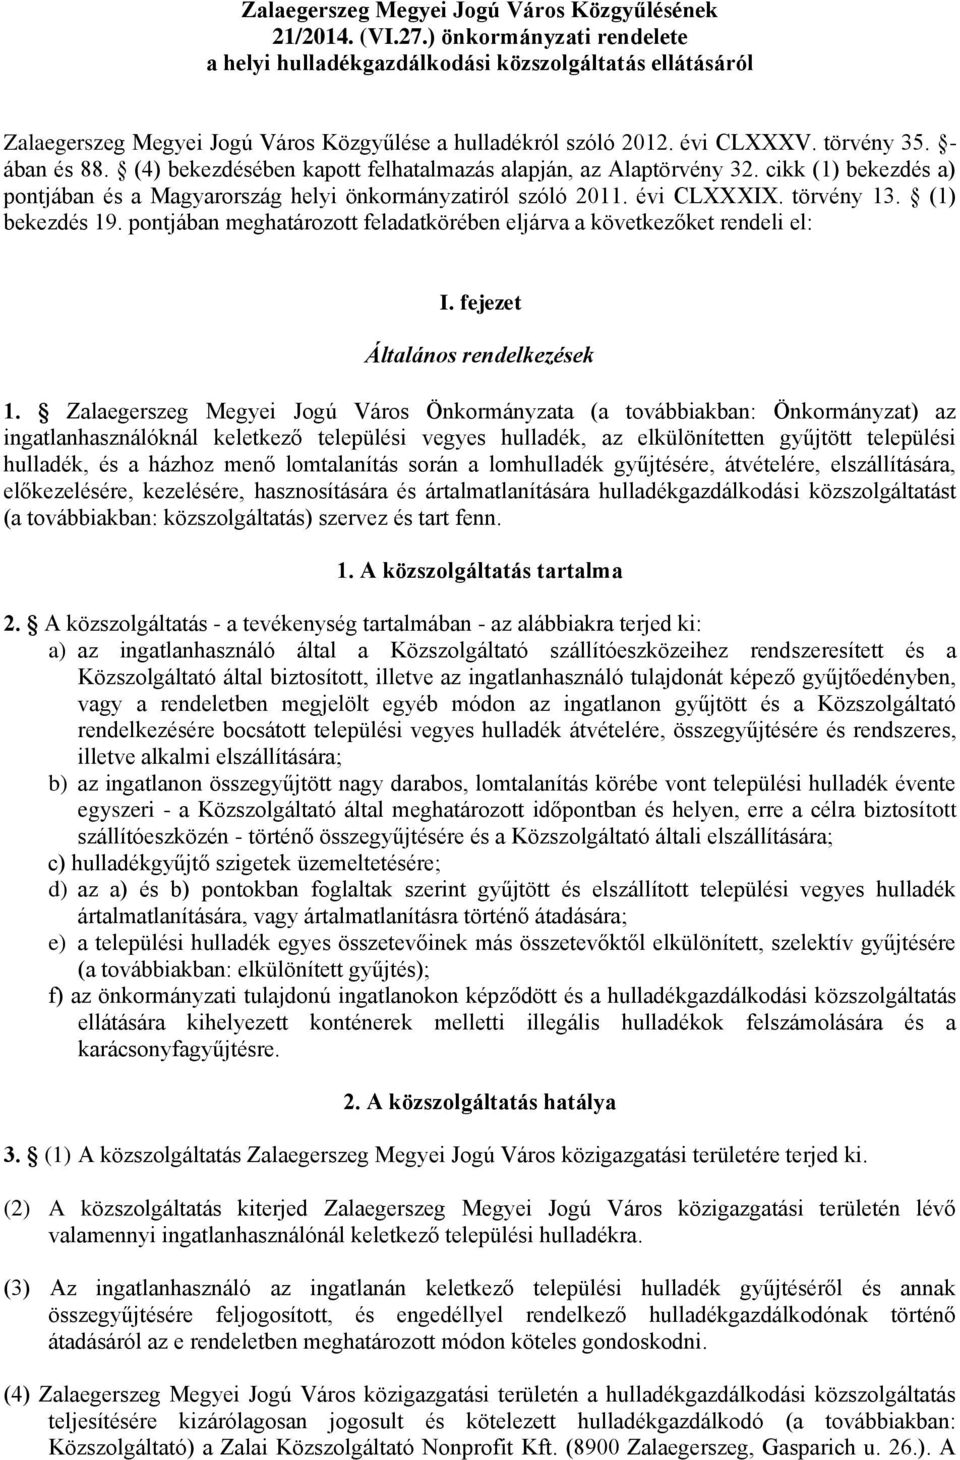 (4) bekezdésében kapott felhatalmazás alapján, az Alaptörvény 32. cikk (1) bekezdés a) pontjában és a Magyarország helyi önkormányzatiról szóló 2011. évi CLXXXIX. törvény 13. (1) bekezdés 19.